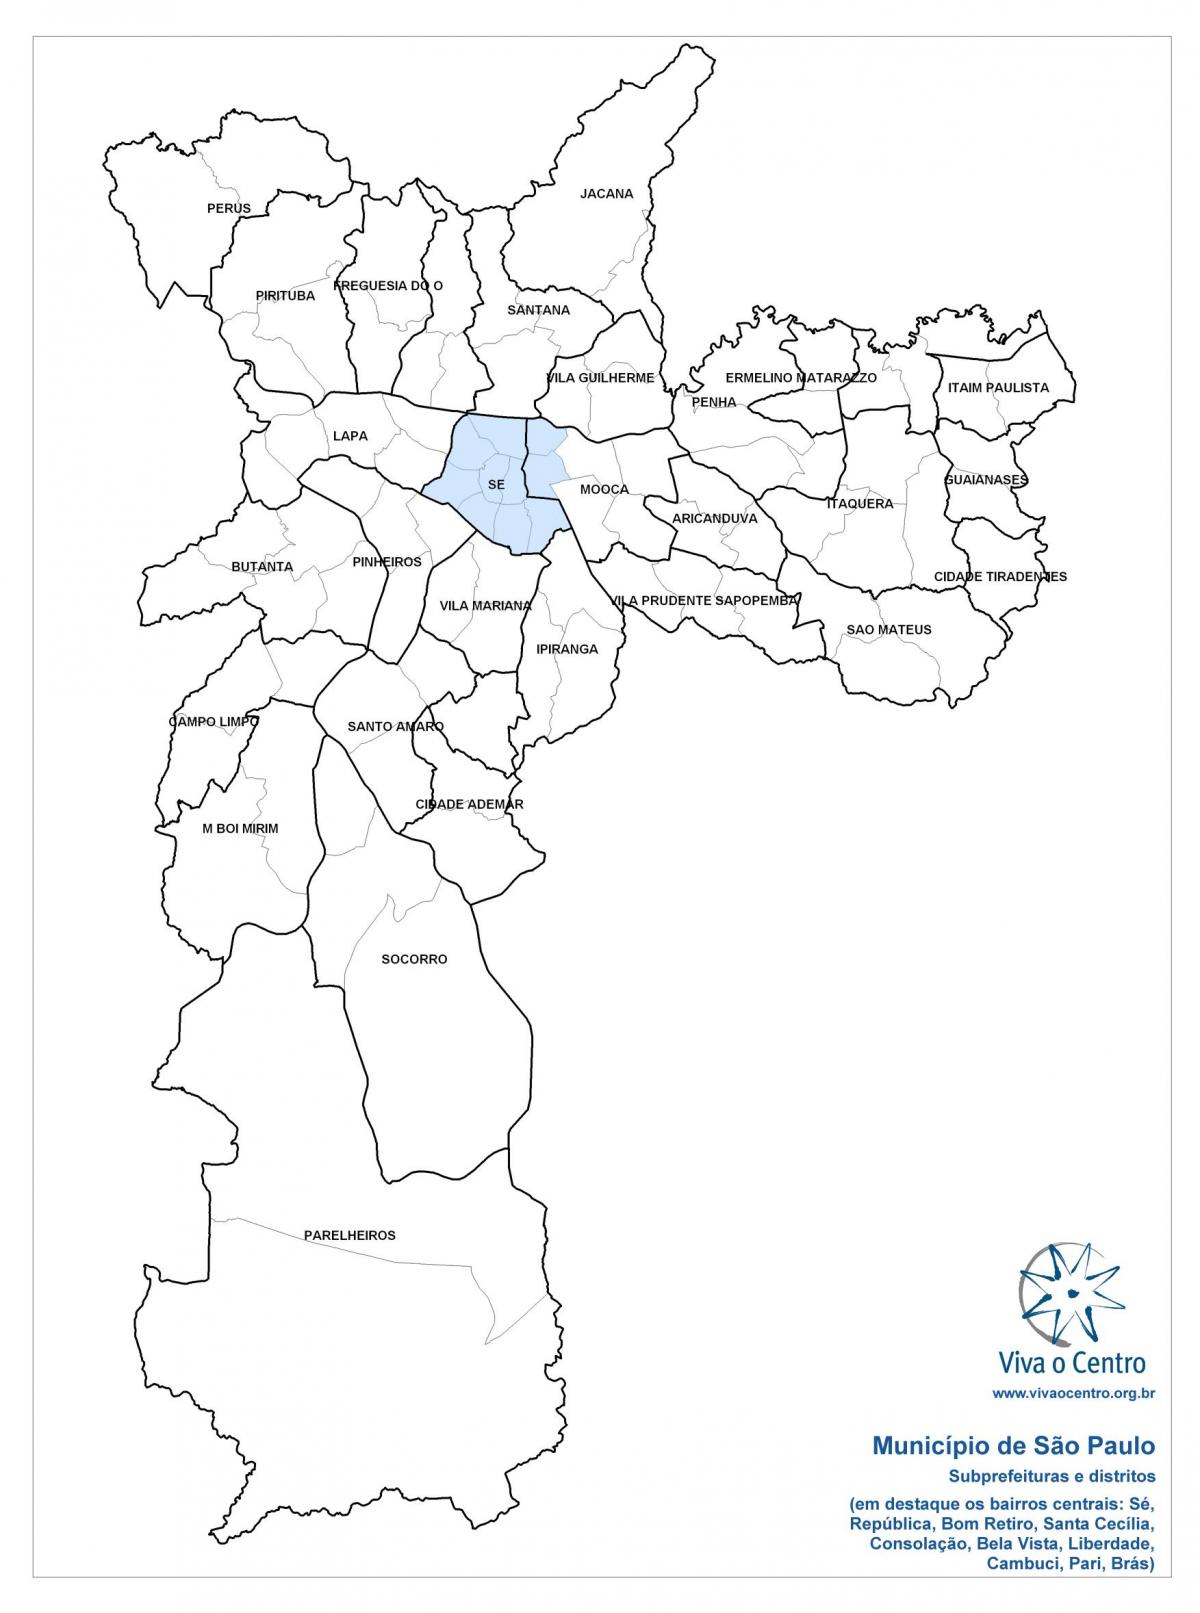 מפה של אזור מרכזי סאו פאולו